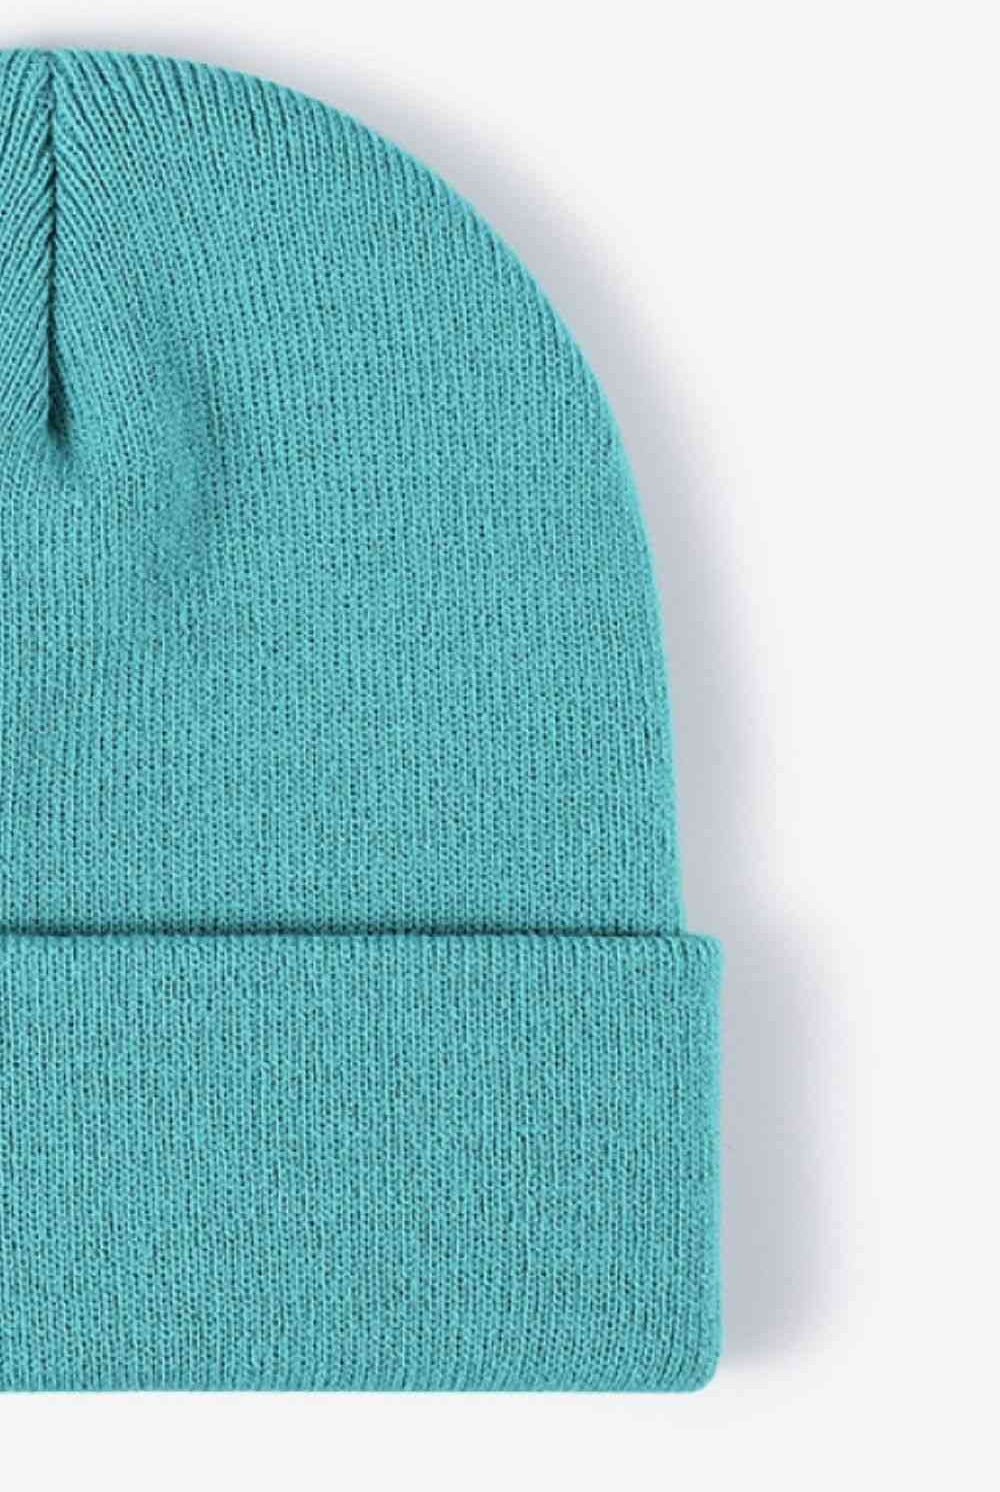 Cadet Blue Cuff Knit Beanie Winter Accessories